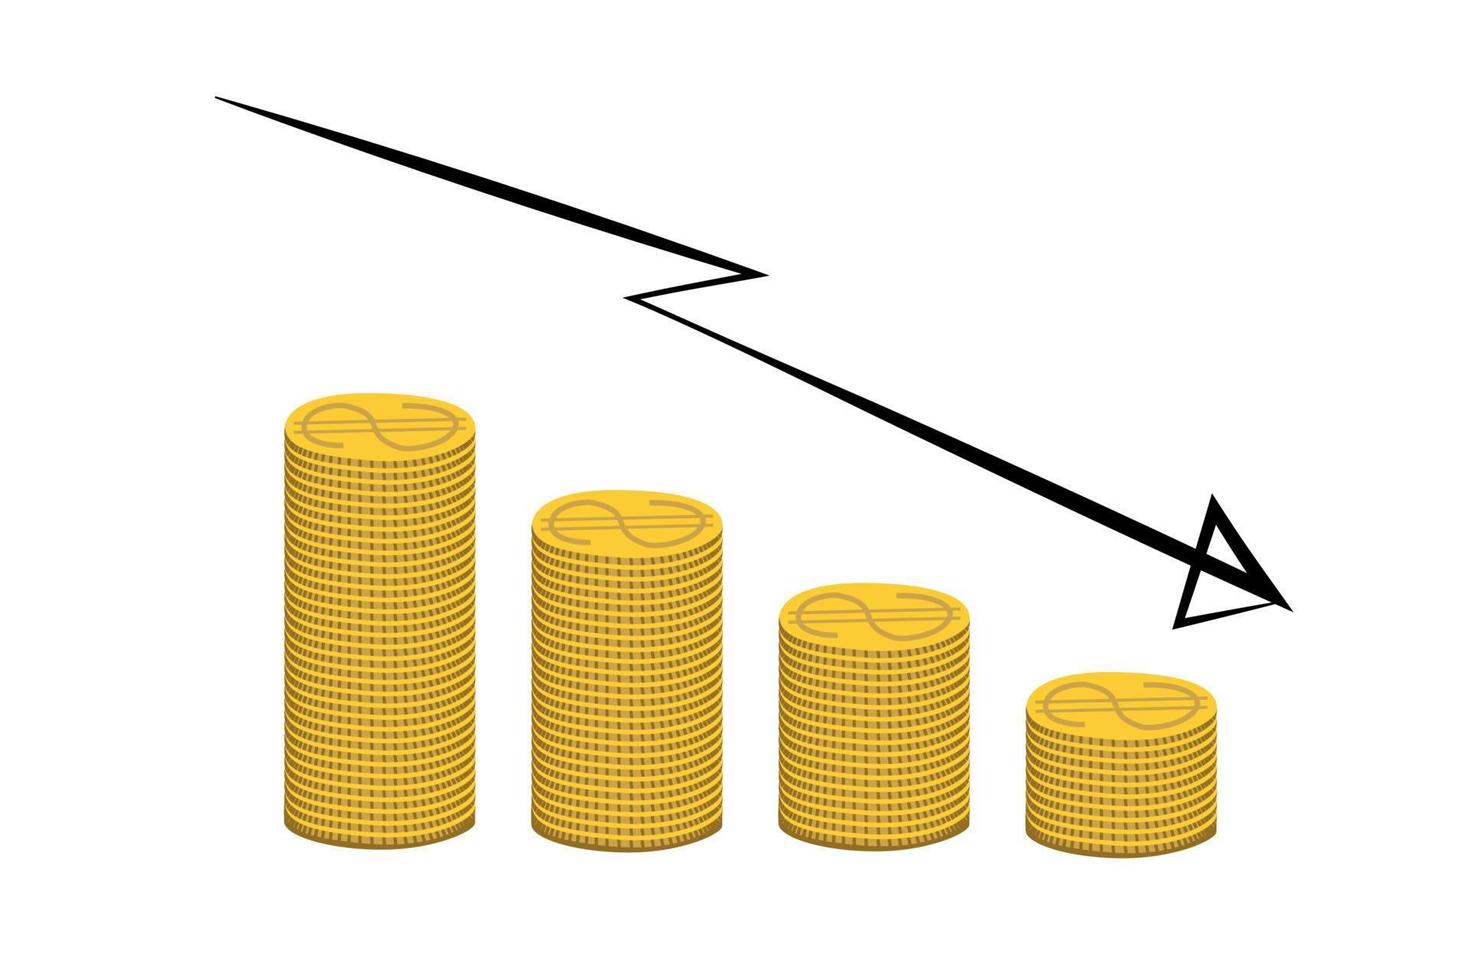 d'or dollar pièces de monnaie empiler avec La Flèche bas. argent, économie, finance, investissement symbole. devise vers le bas diagramme concept. vecteur